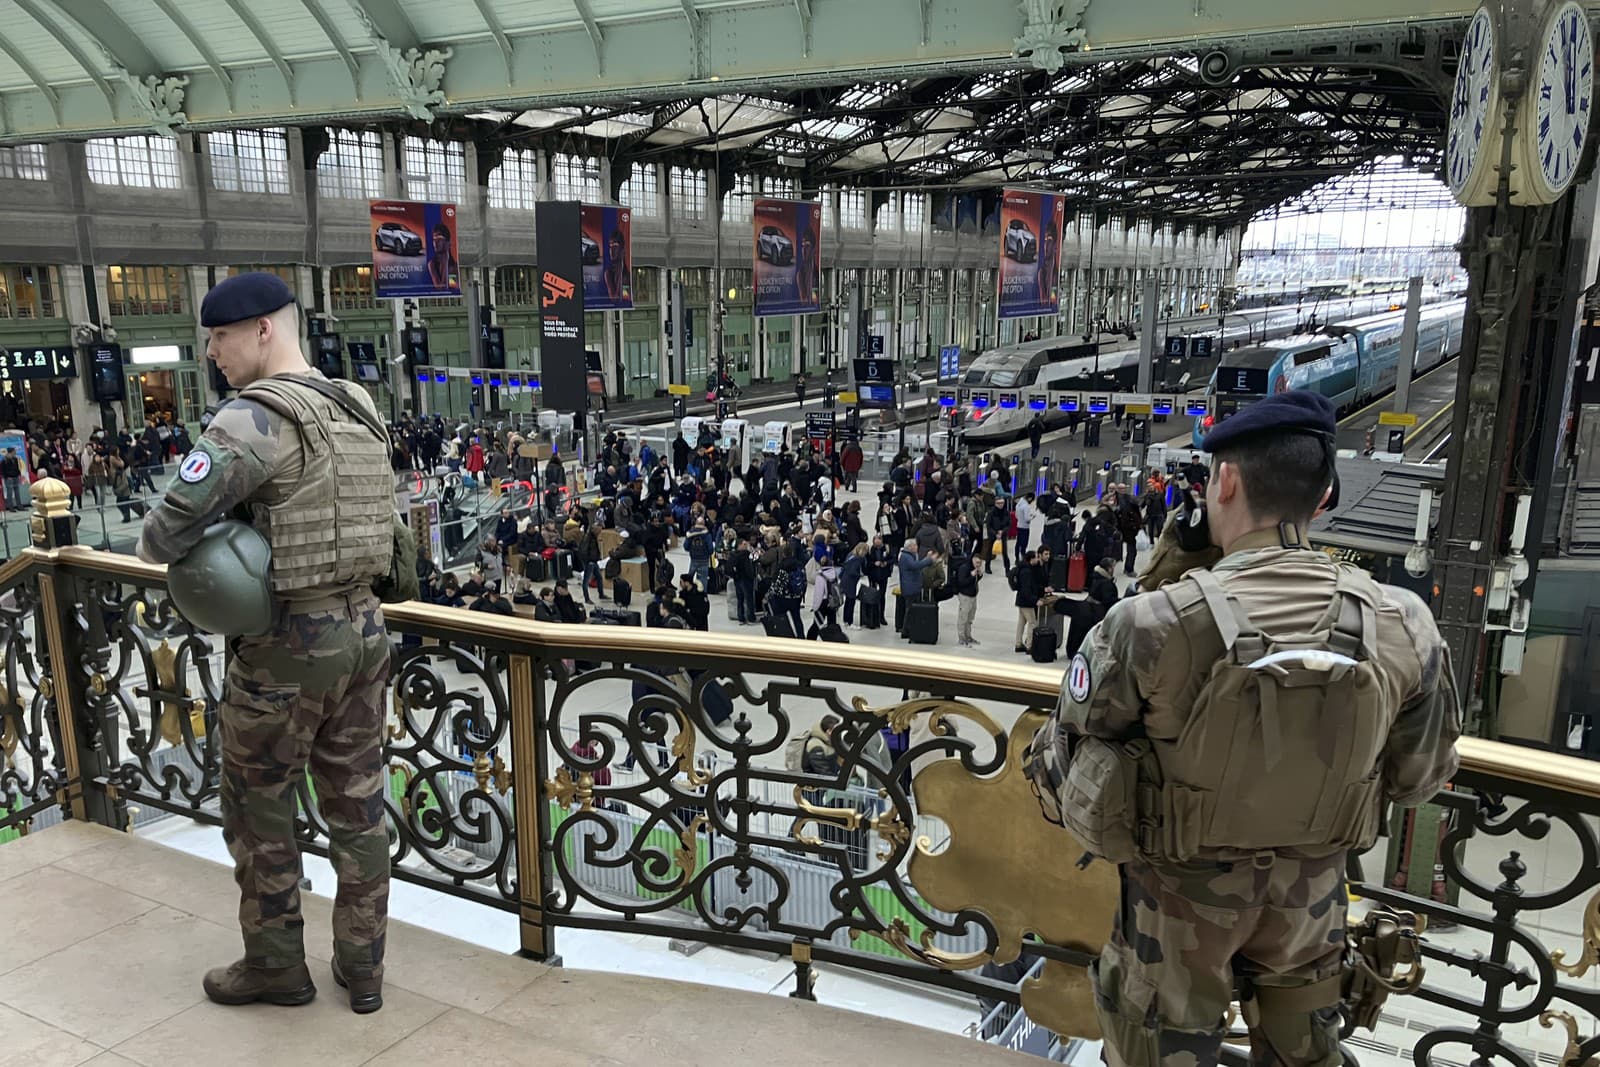 Vojaci hliadkujú po útoku nožom na železničnej stanici  Gare de Lyon v Paráži